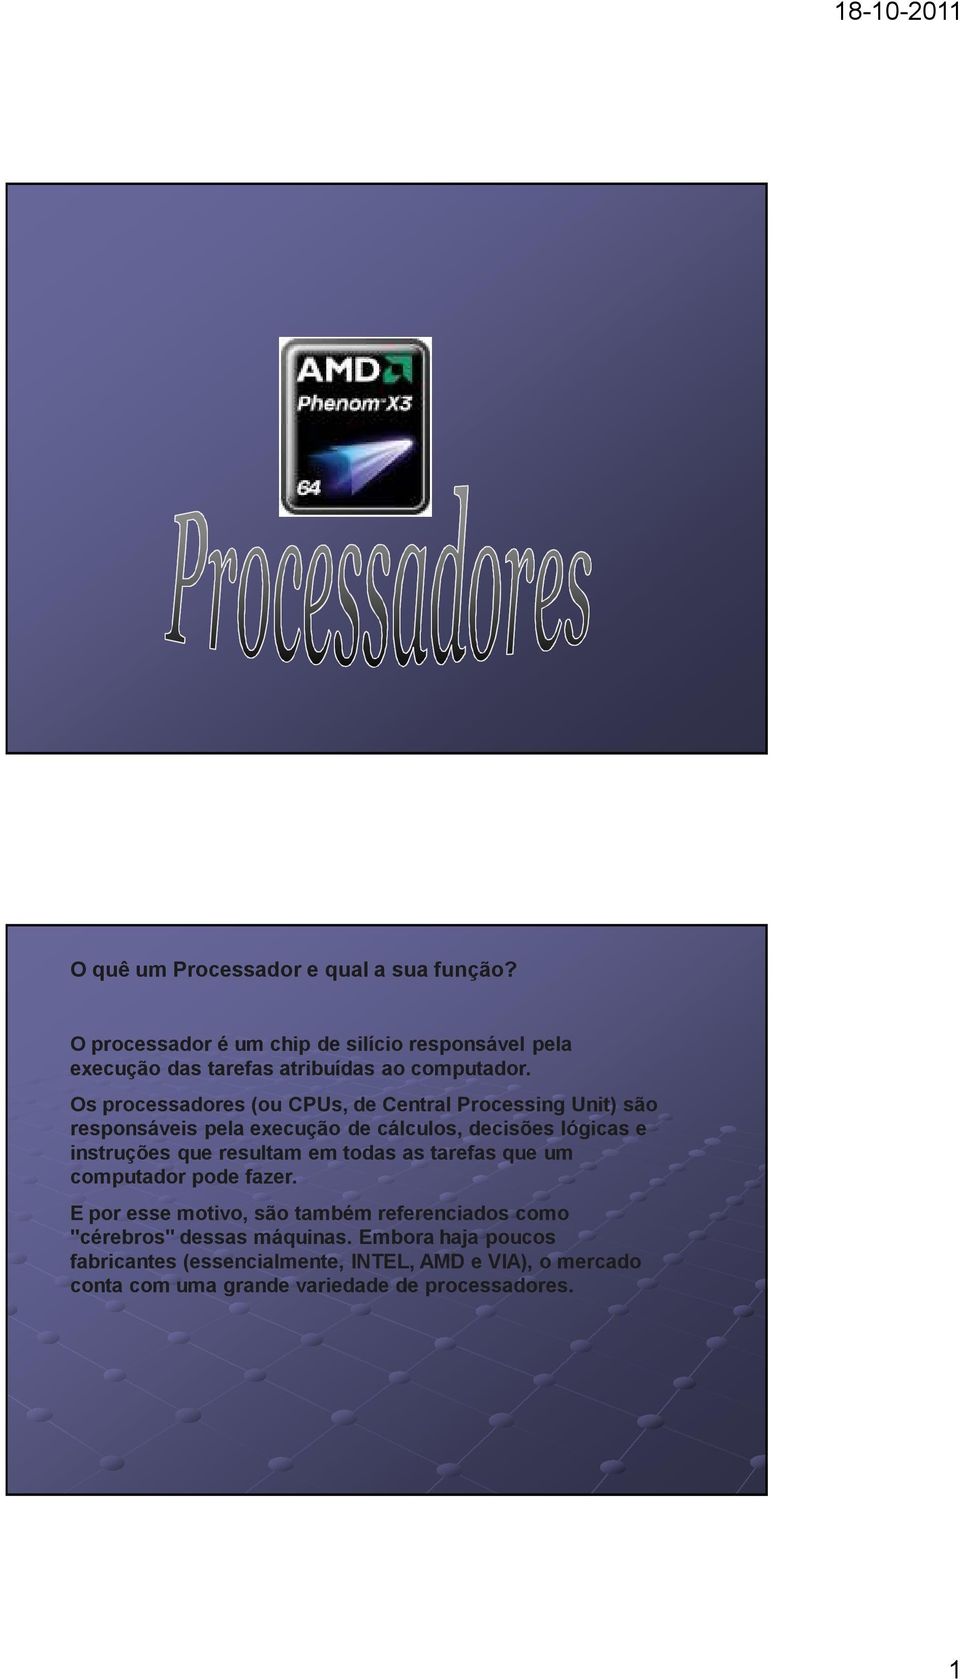 Os processadores (ou CPUs, de Central Processing Unit) são responsáveis pela execução de cálculos, decisões lógicas e instruções que